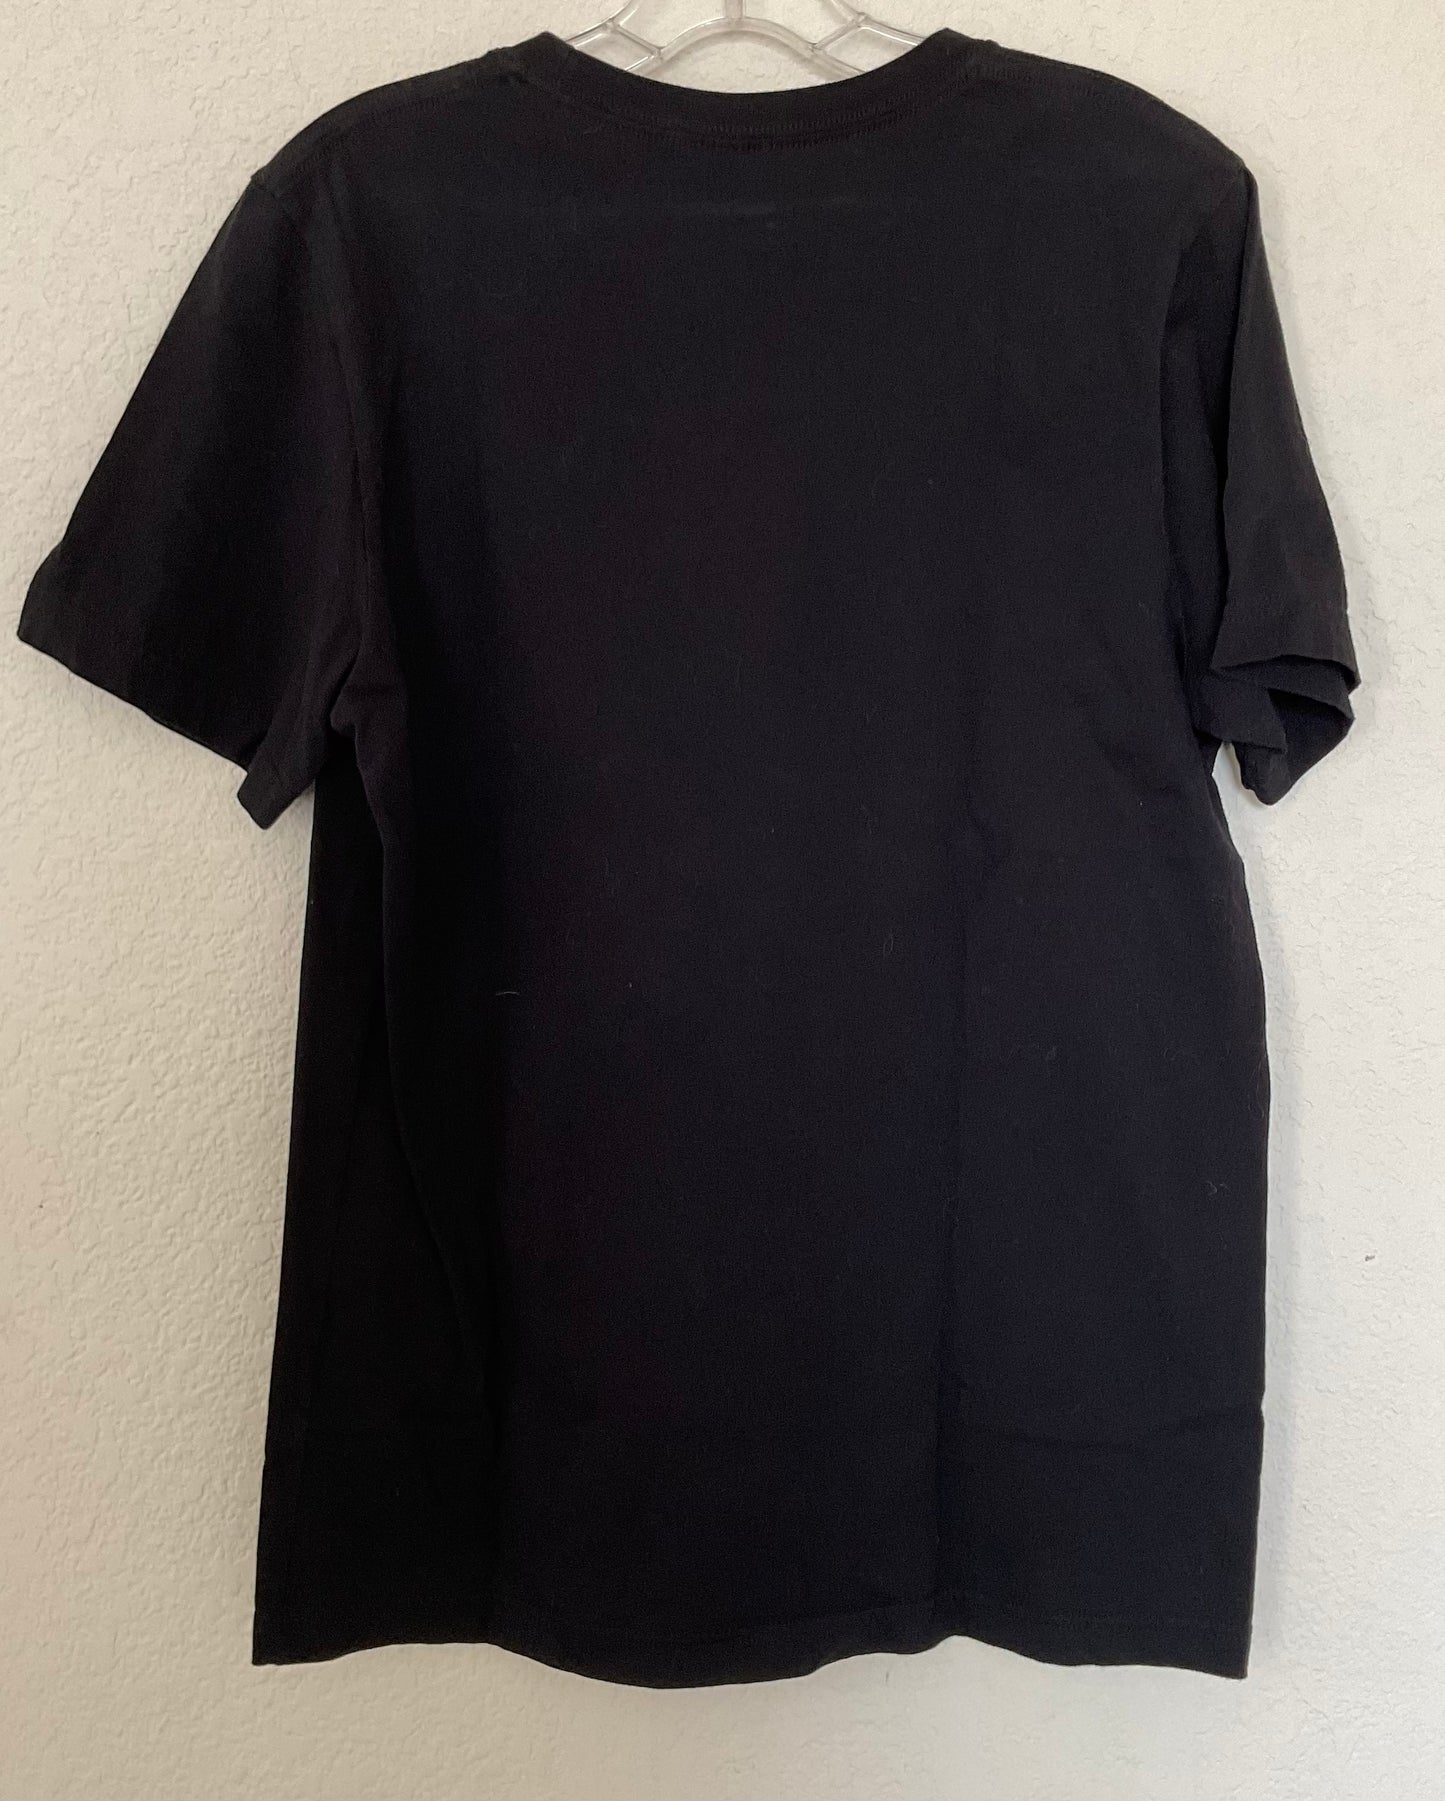 CANVAS  Black Graphic Jr’s T-shirt Size M